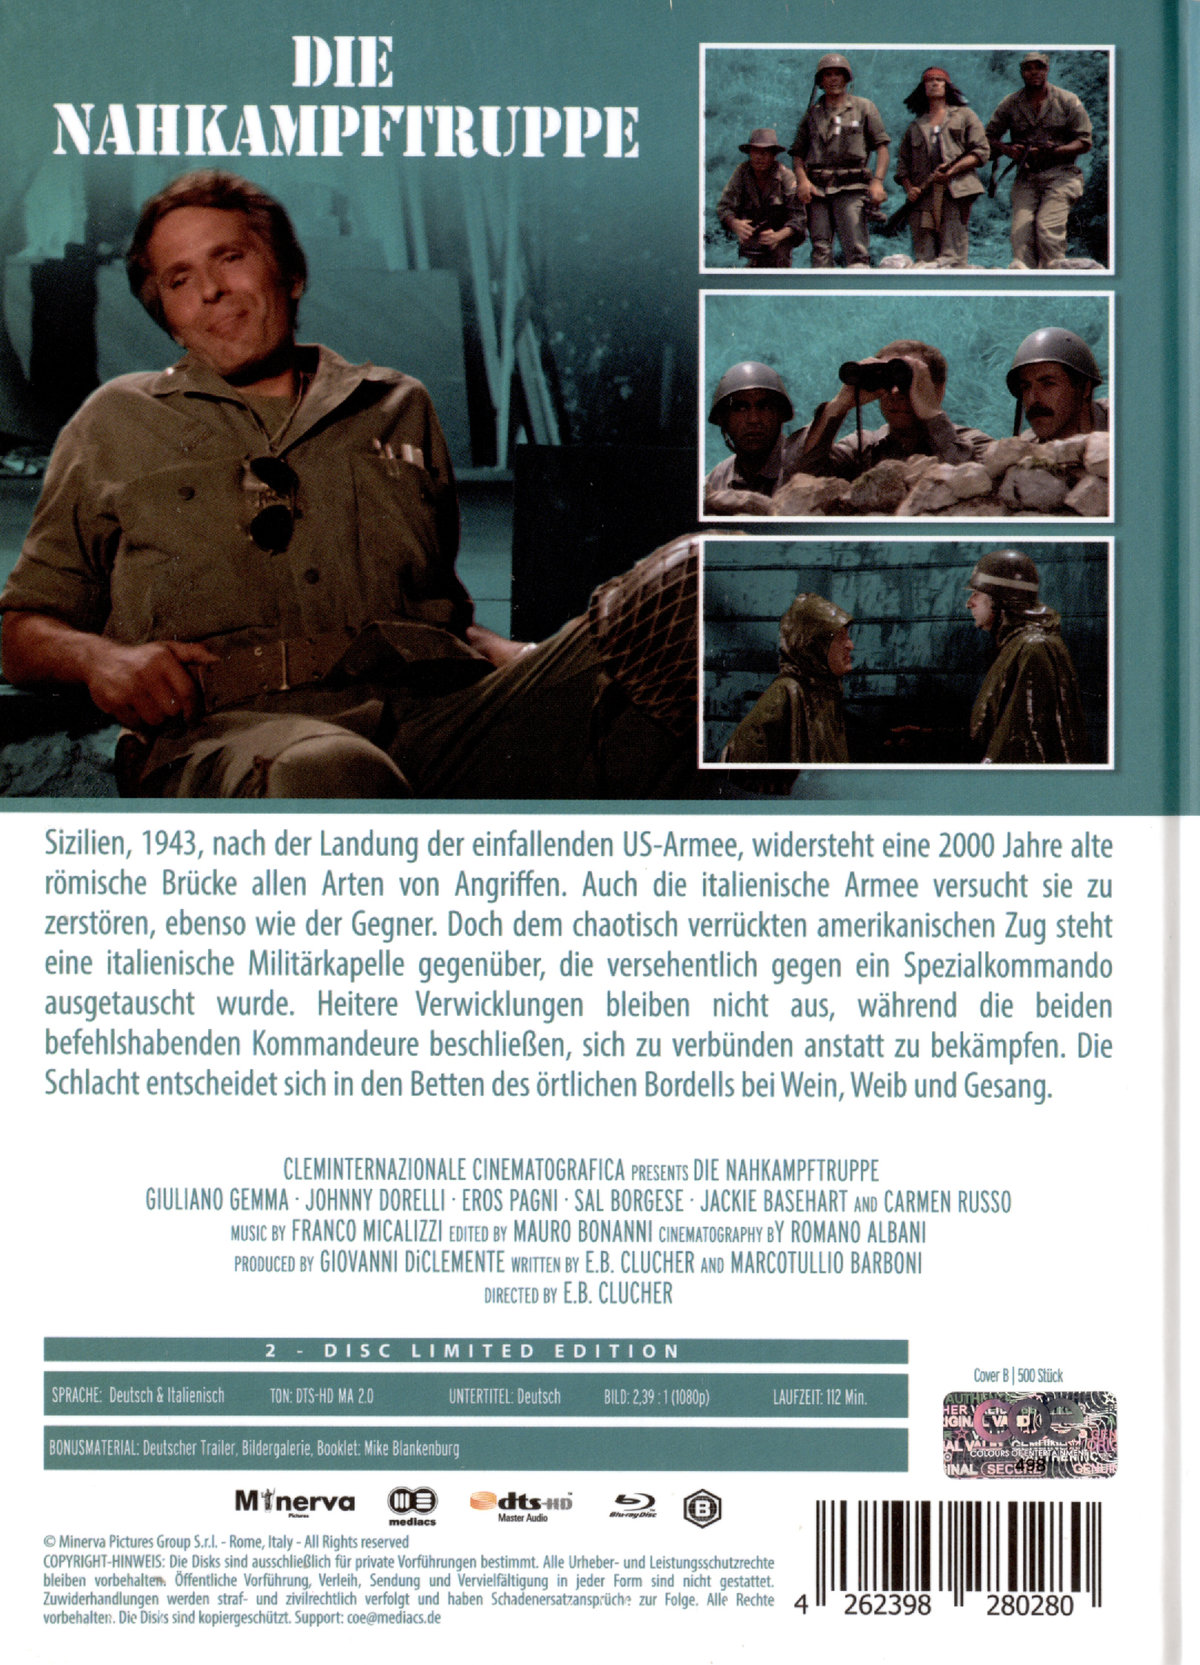 Nahkampftruppe, Die - Uncut Mediabook Edition  (DVD+blu-ray) (B)